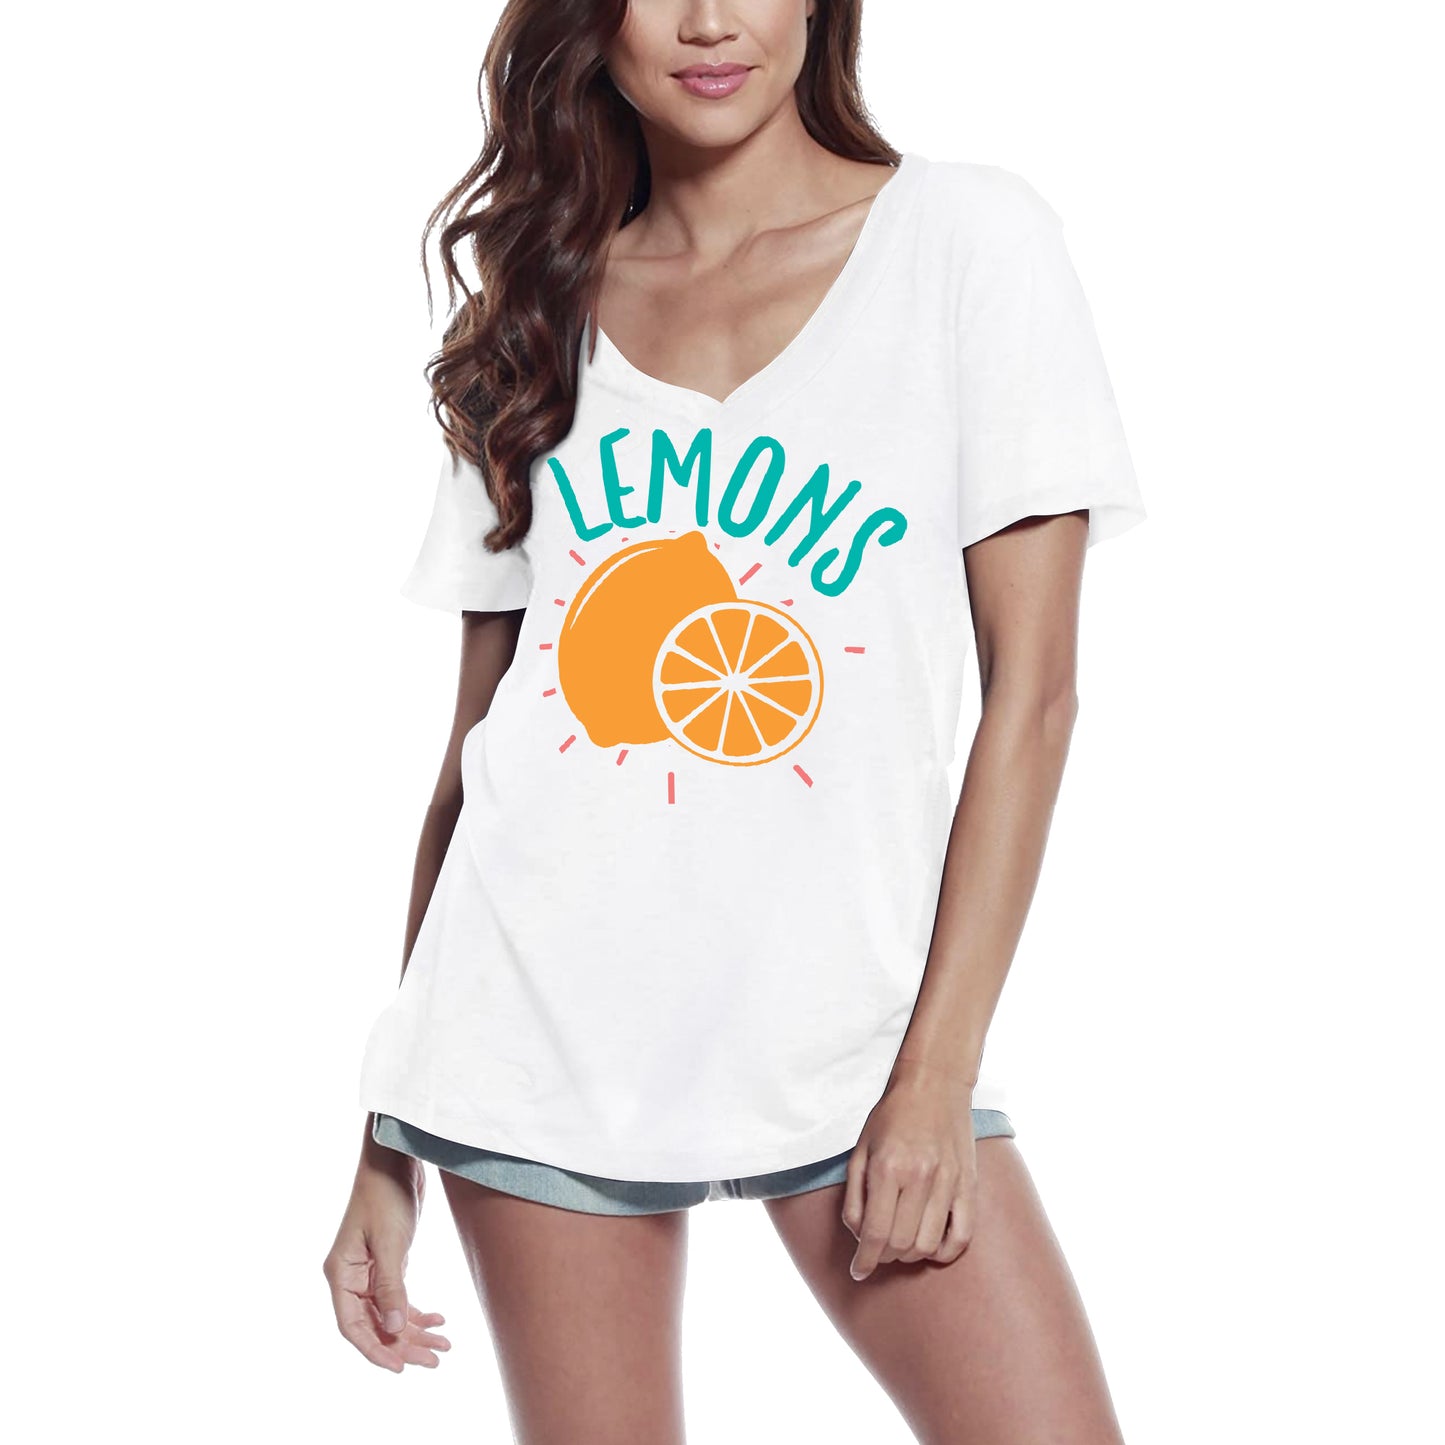 ULTRABASIC Women's T-Shirt Lemons - Funny Short Sleeve Tee Shirt Tops